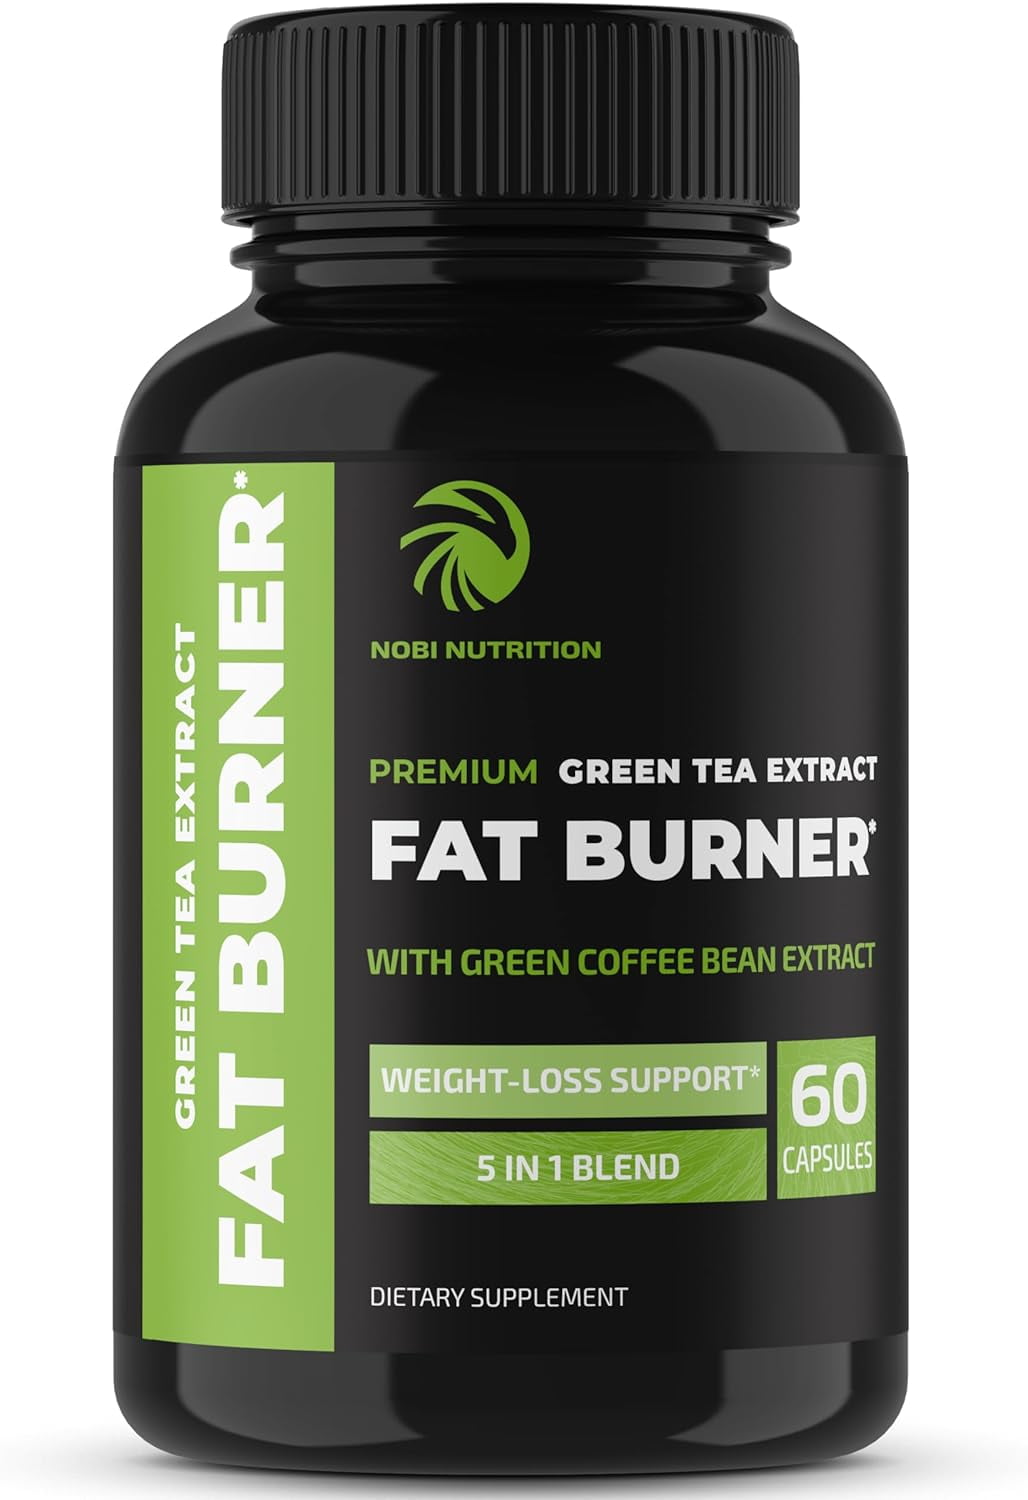 Green Tea Fat Burner, 30 Fast-Acting Liquid Soft-Gels